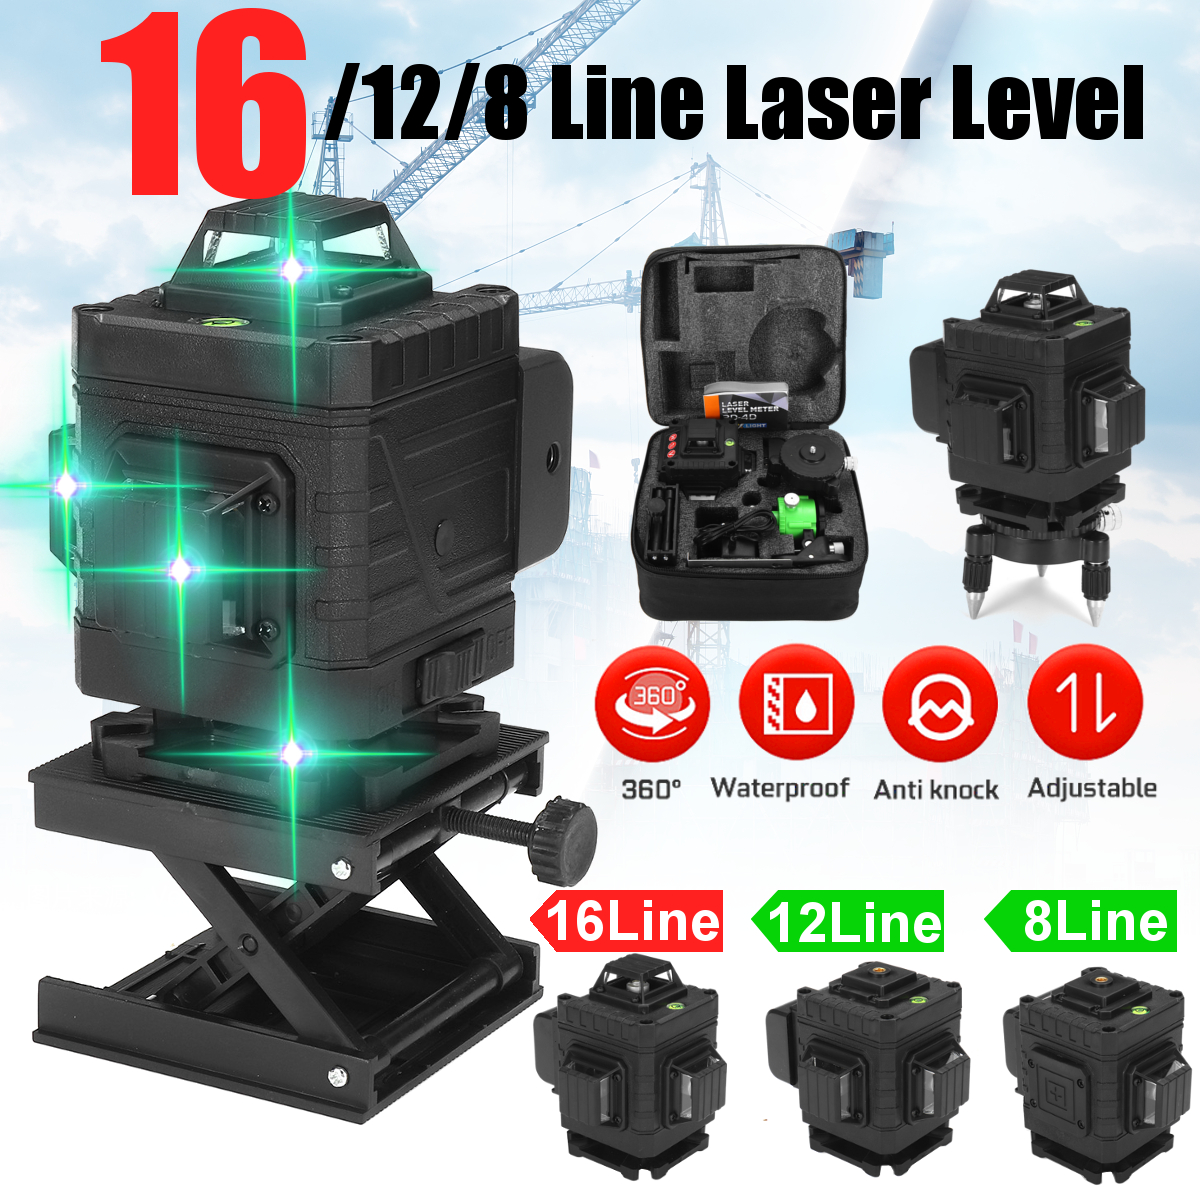 81216-Line-Laser-Level-Green-Light-Auto-Self-Leveling-Cross-360deg-Measuring-1808729-1